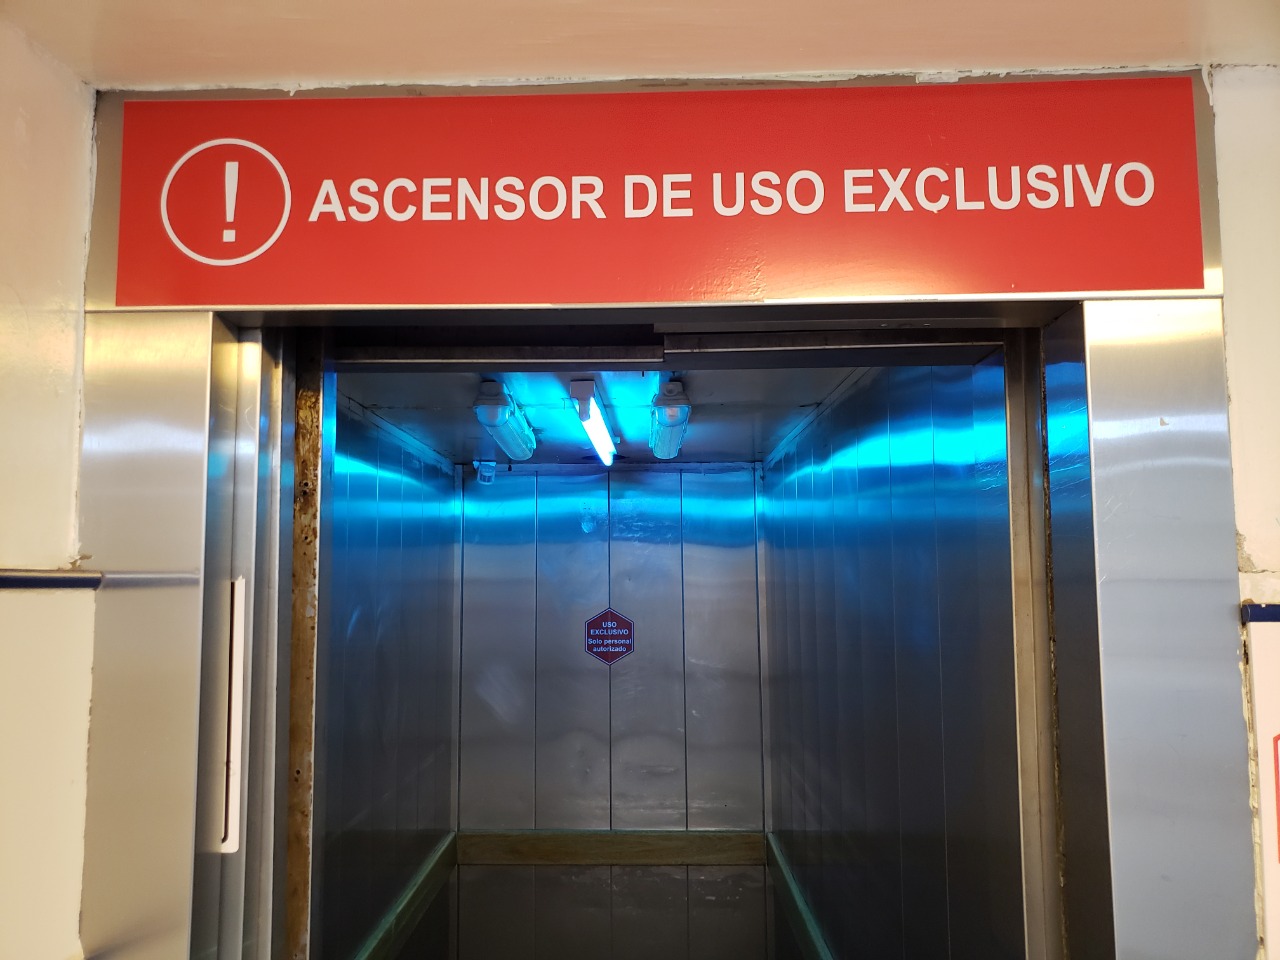 Uno de los equipos fue instalado en el ascensor del hospital. Foto gentileza.